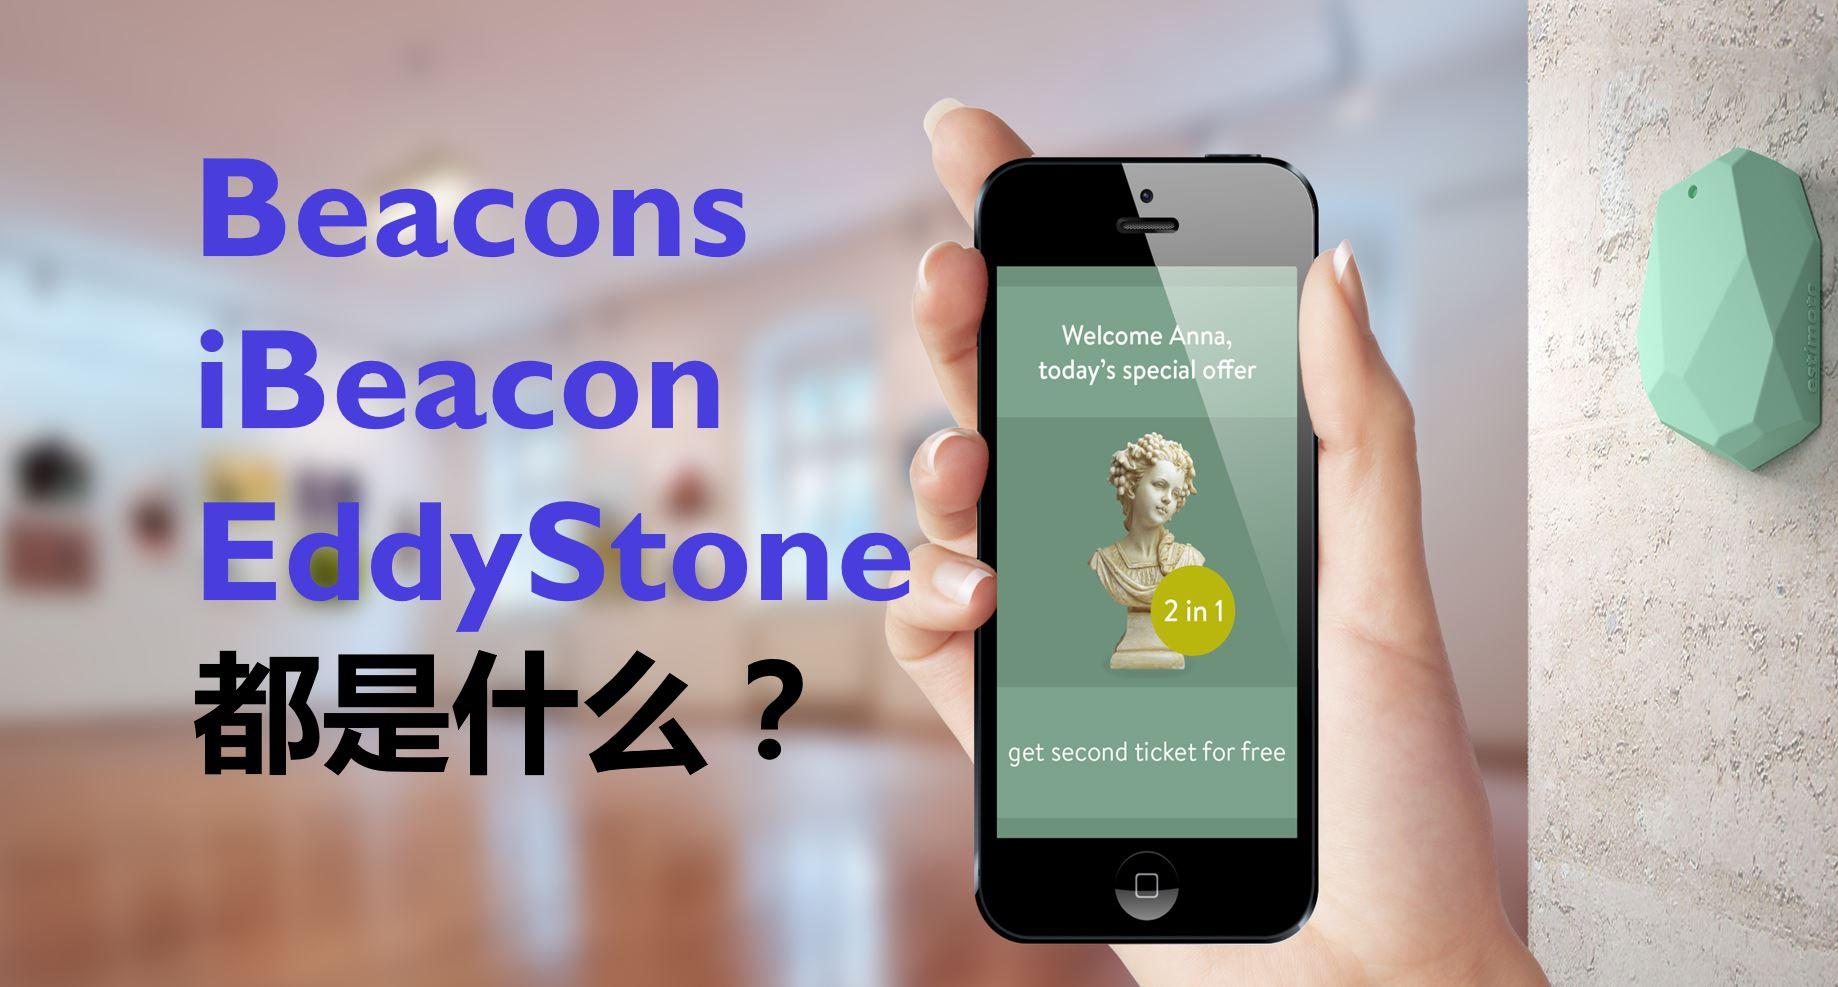 两分钟搞明白Beacon,iBeacon和EddyStone